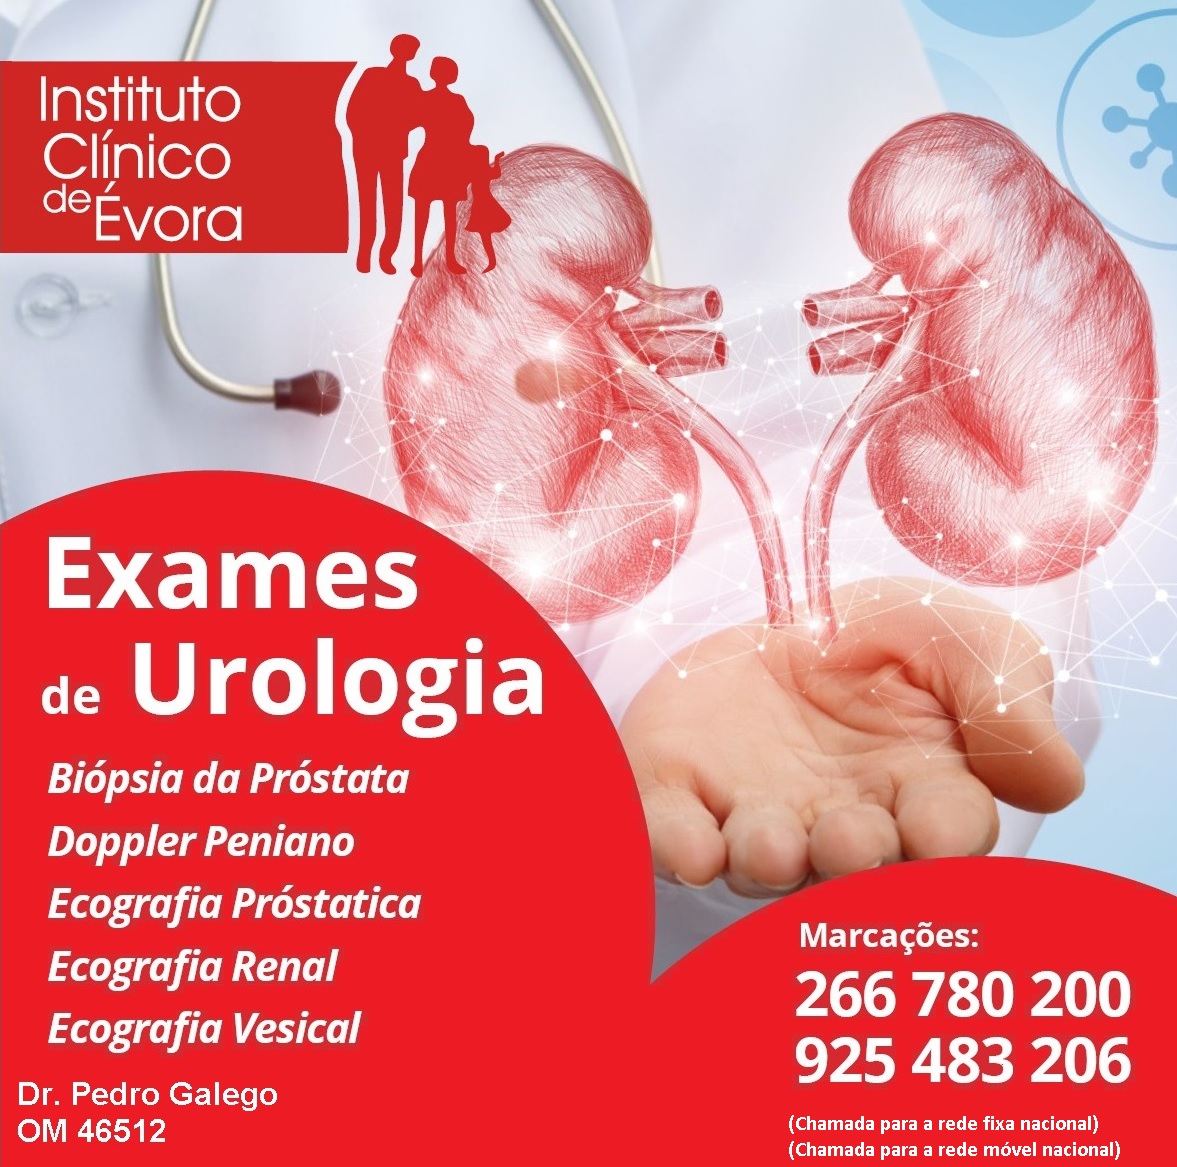 Exames de Urologia